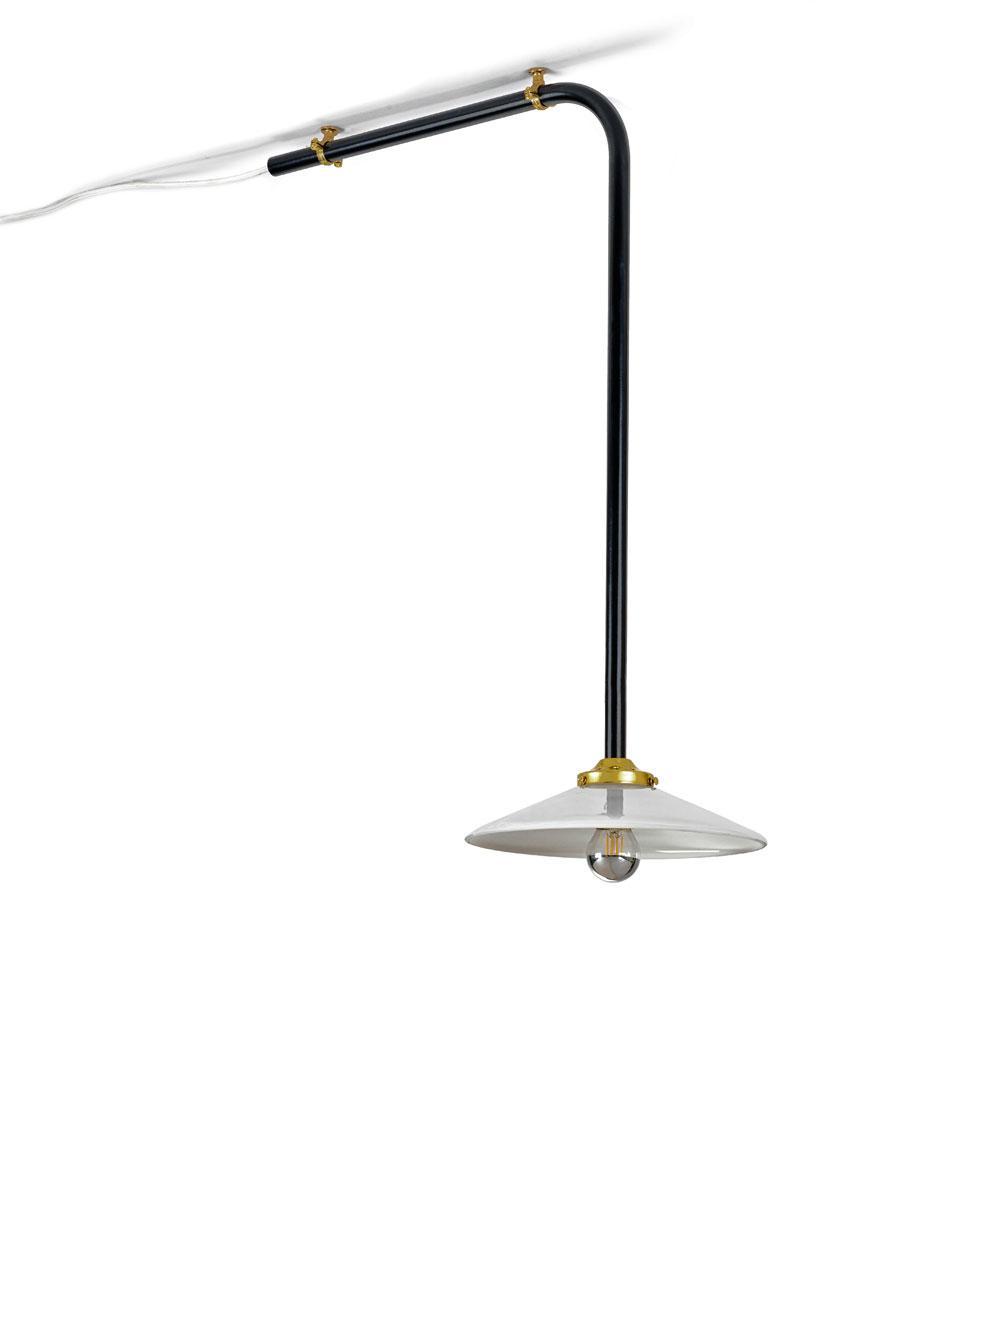 Ceiling Lamp de Muller Van Severen, Valerie Objects